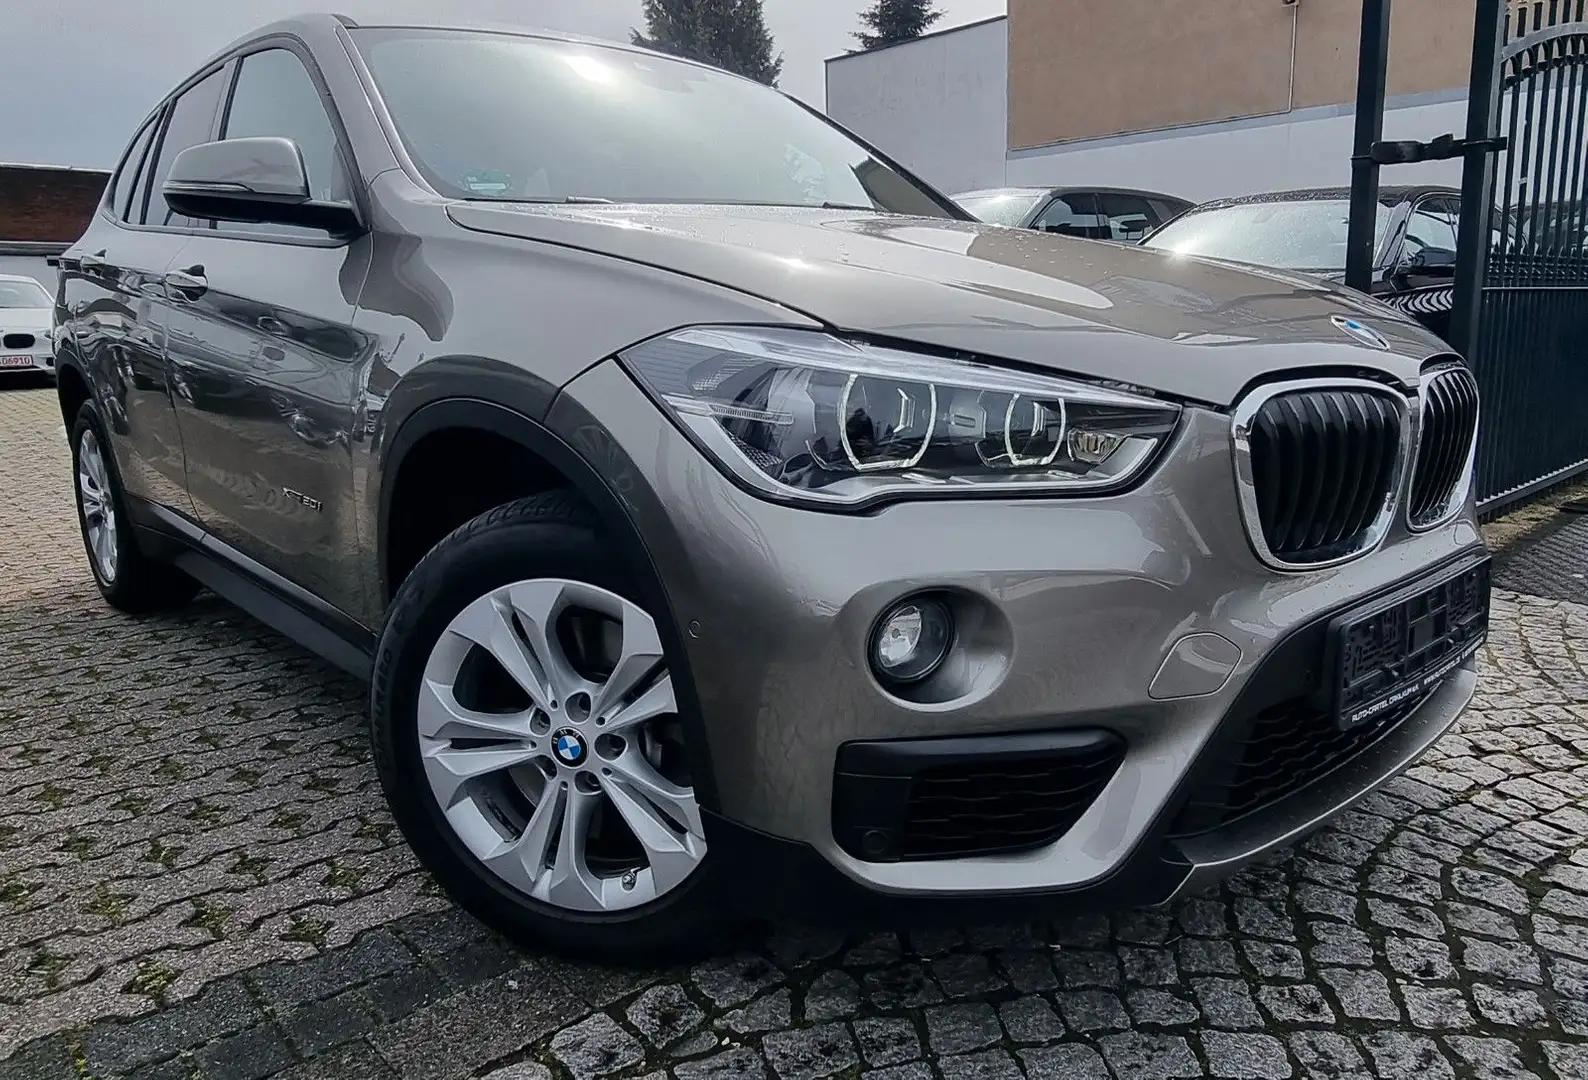 BMW X1 SUV/Geländewagen/Pickup in Silber gebraucht in Teltow